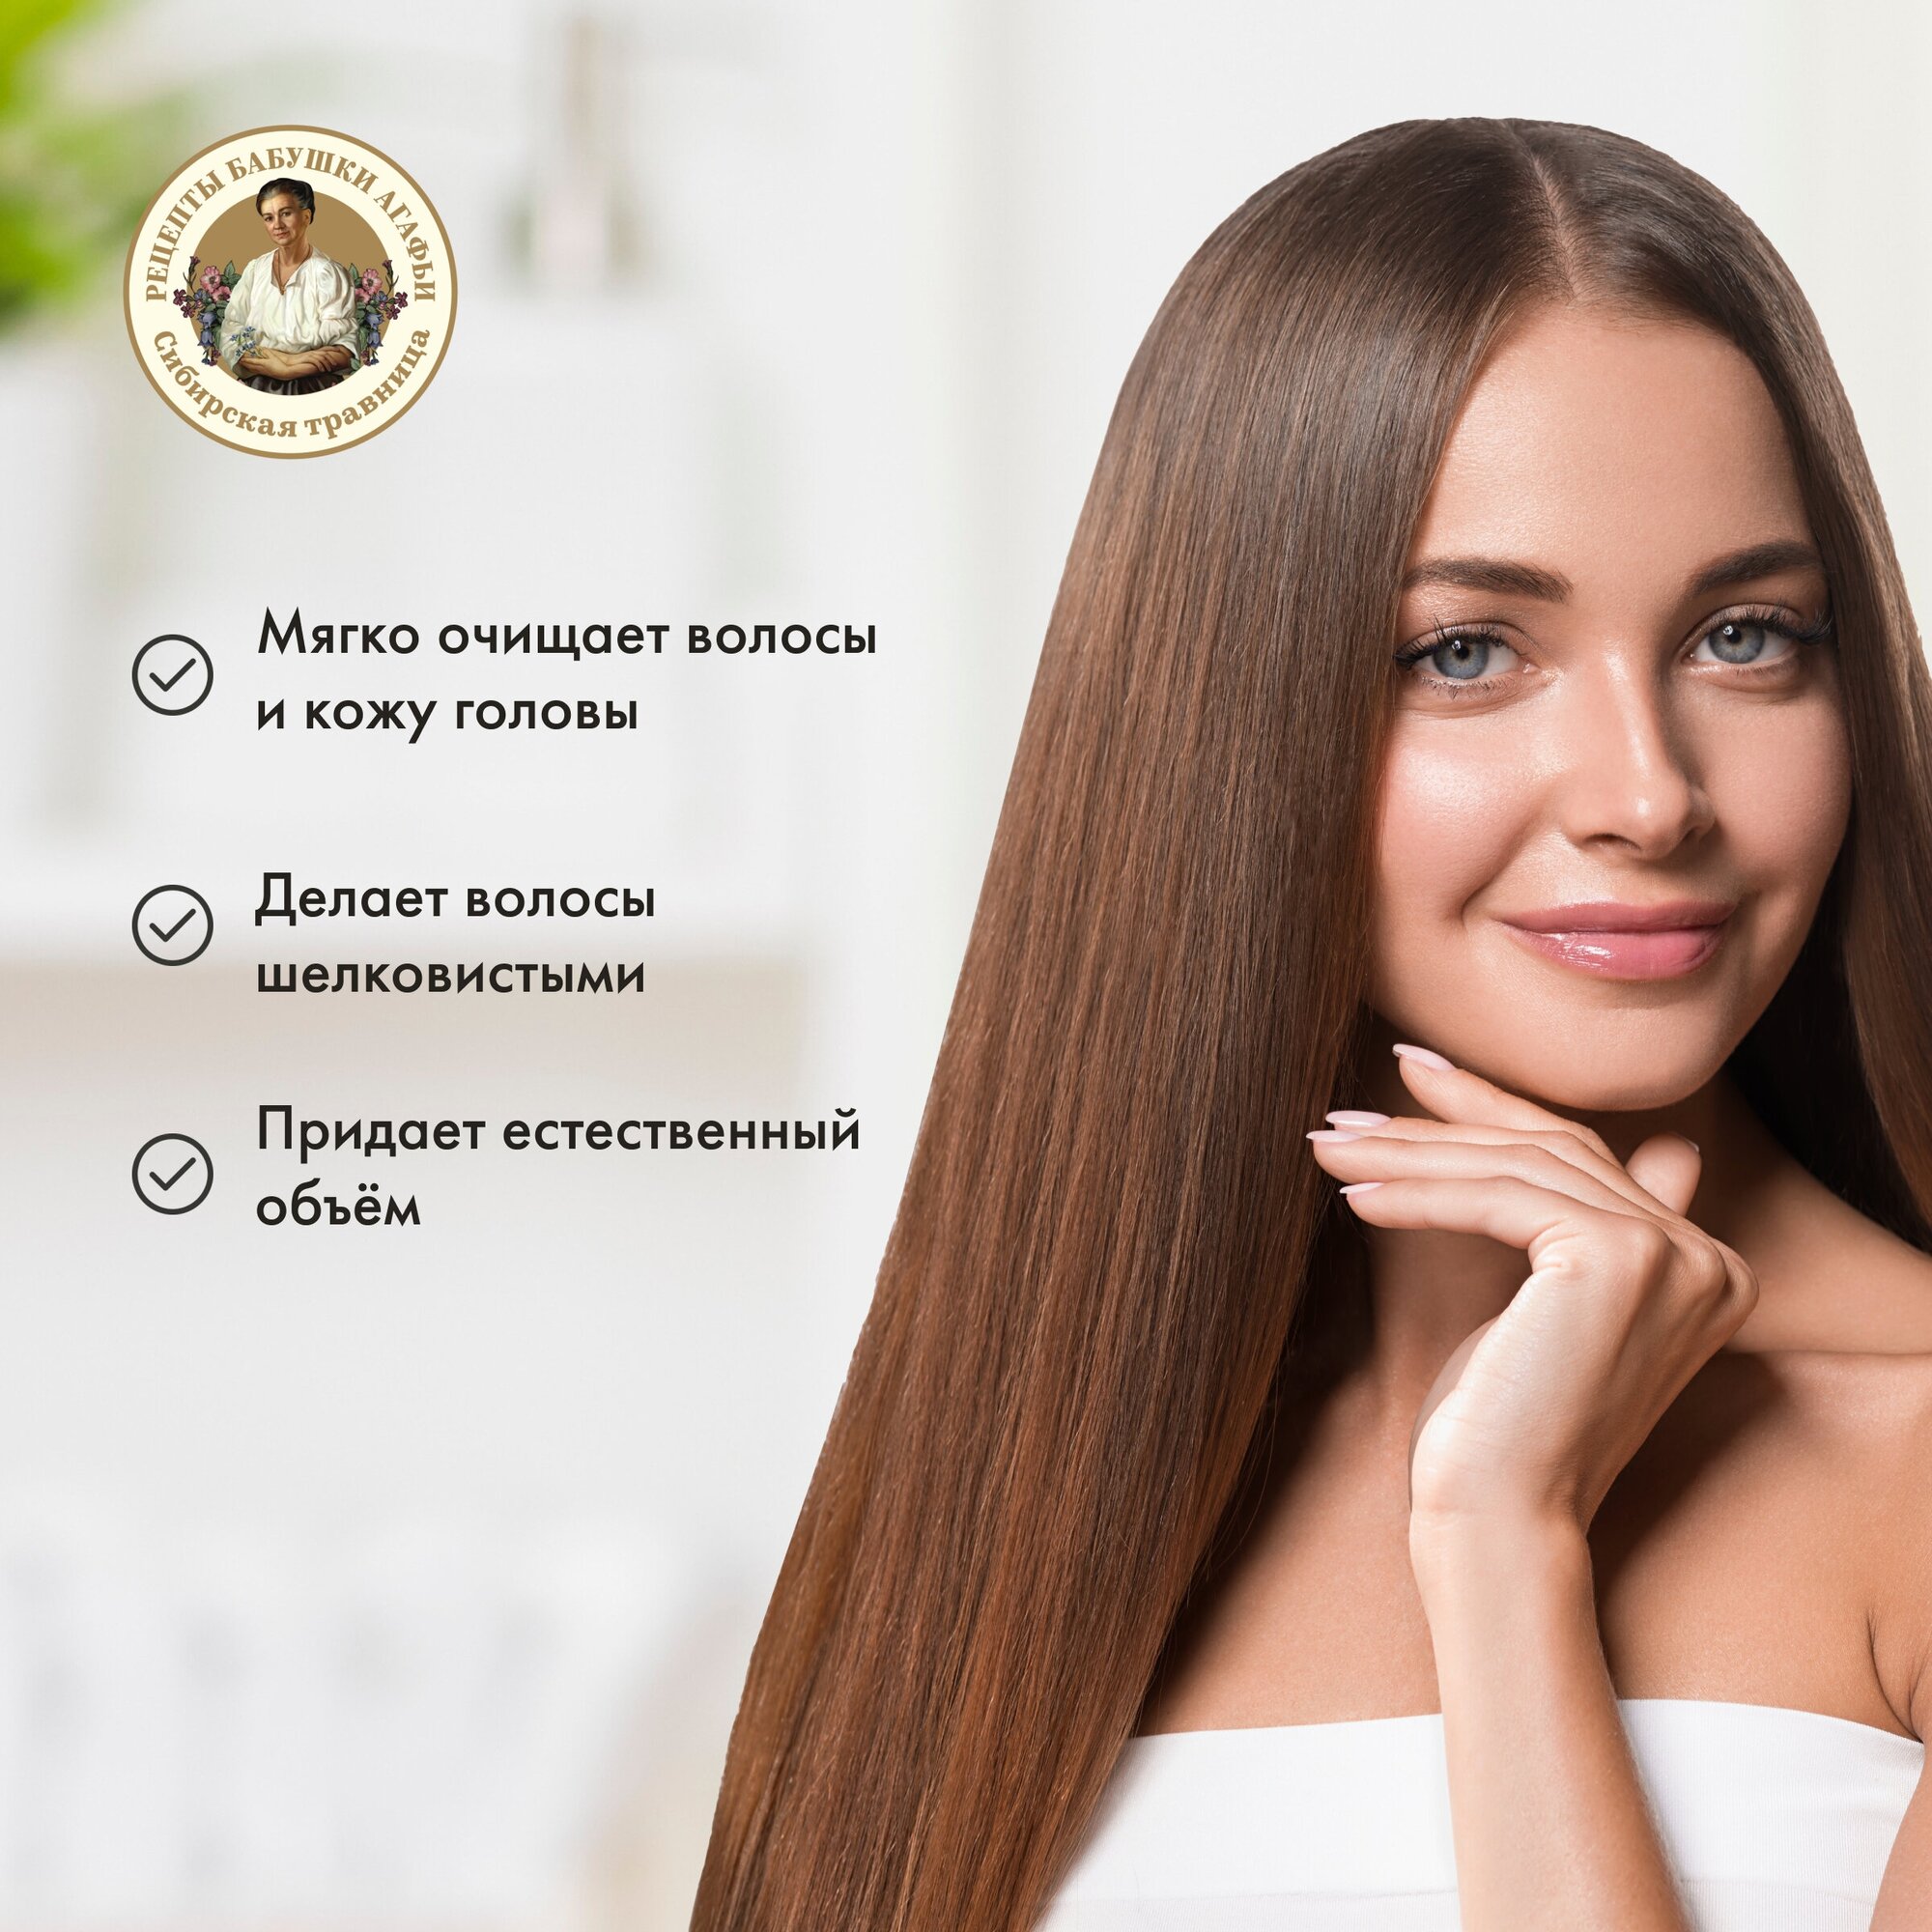 Шампунь-сбор для волос «Объем и пышность» для всех типов волос Рецепты бабушки Агафьи, 350 мл